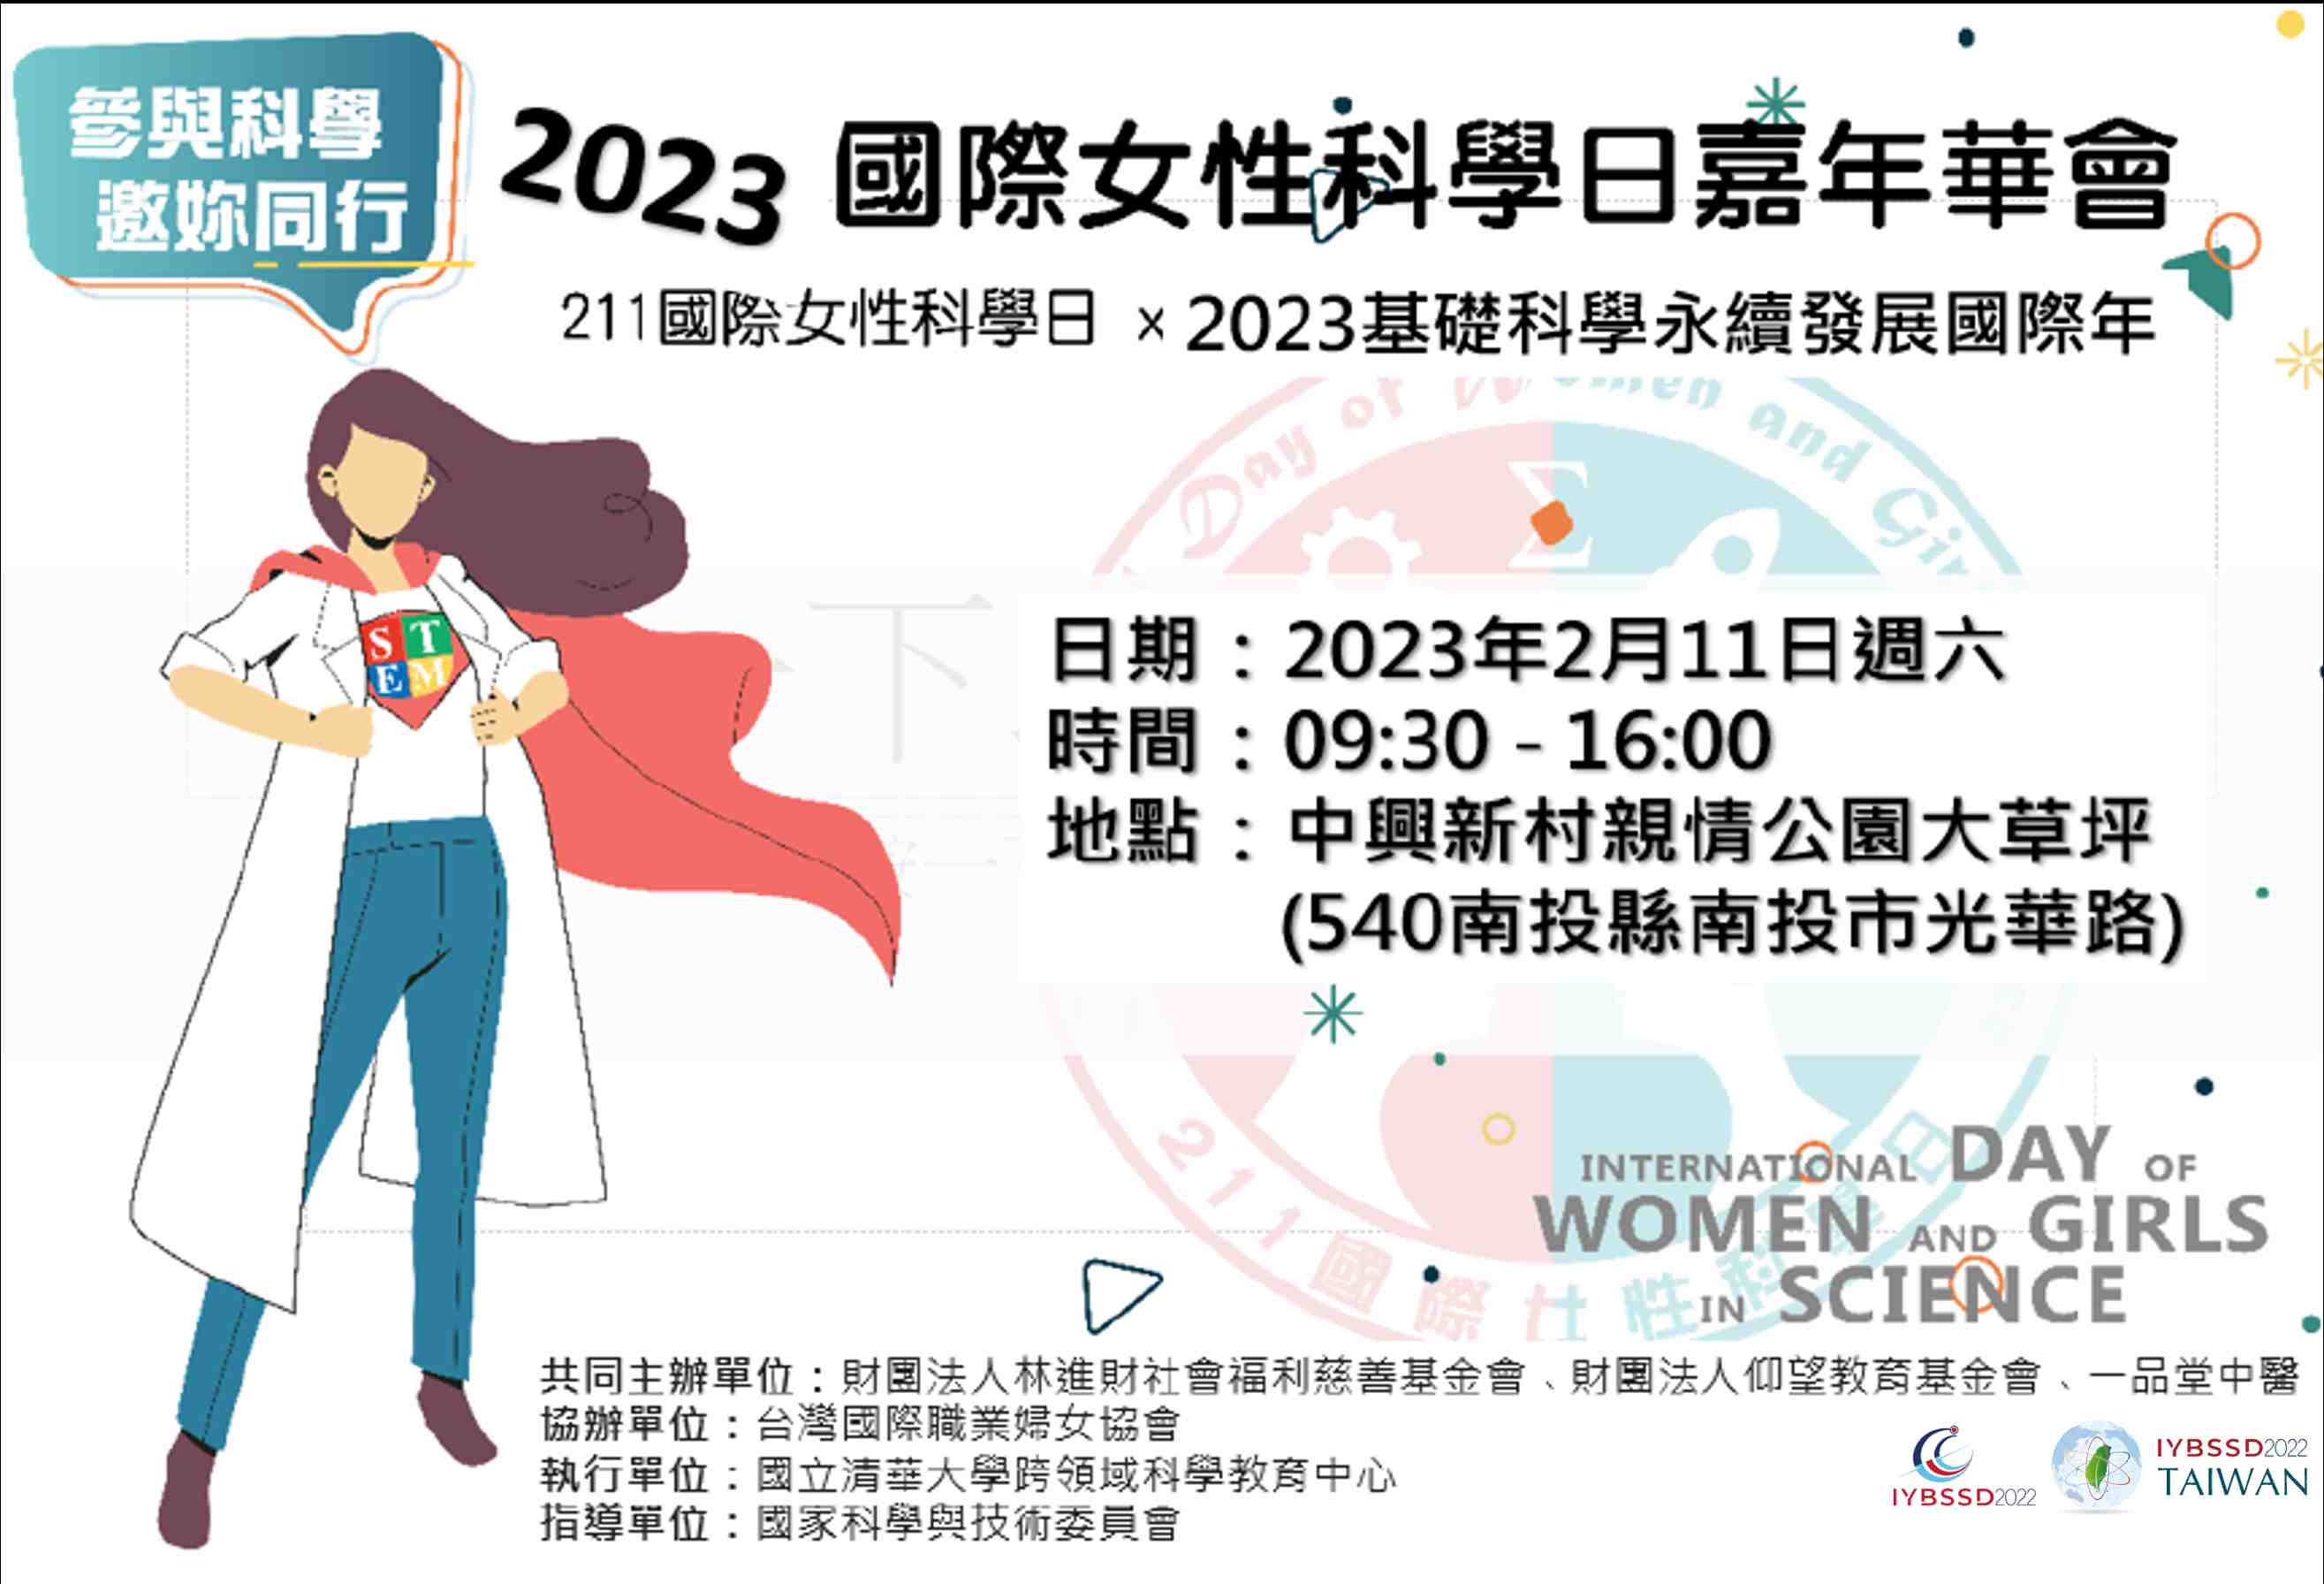 2023國際女性科學日嘉年華會 Promotional Graphics or Posters